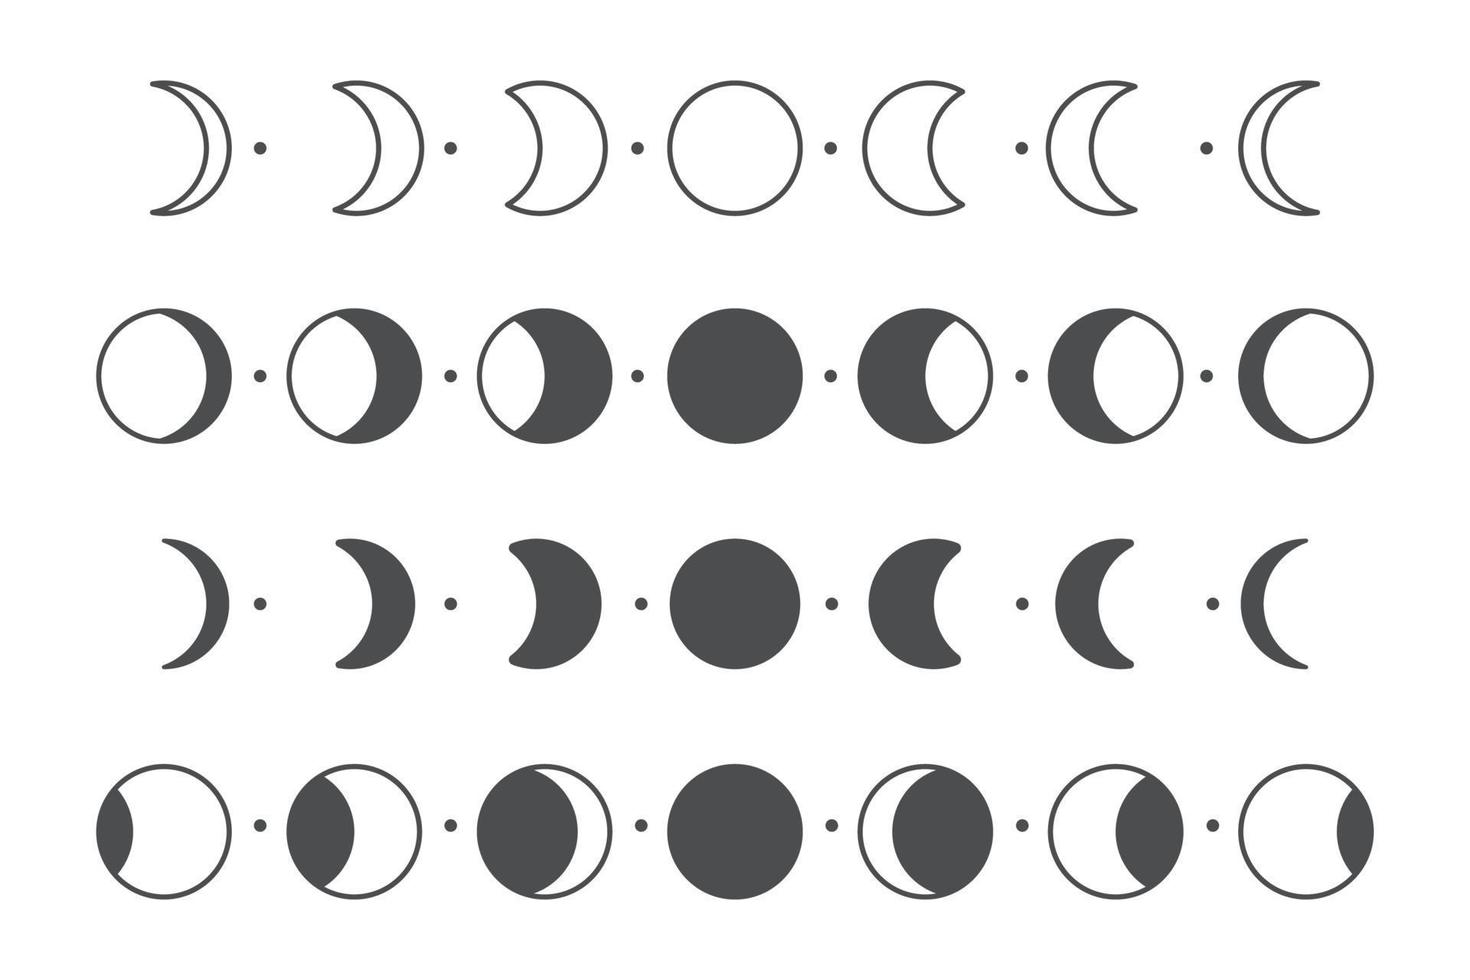 vettore fase lunare della luna semplice disegno a forma di cerchio isolato su sfondo bianco.